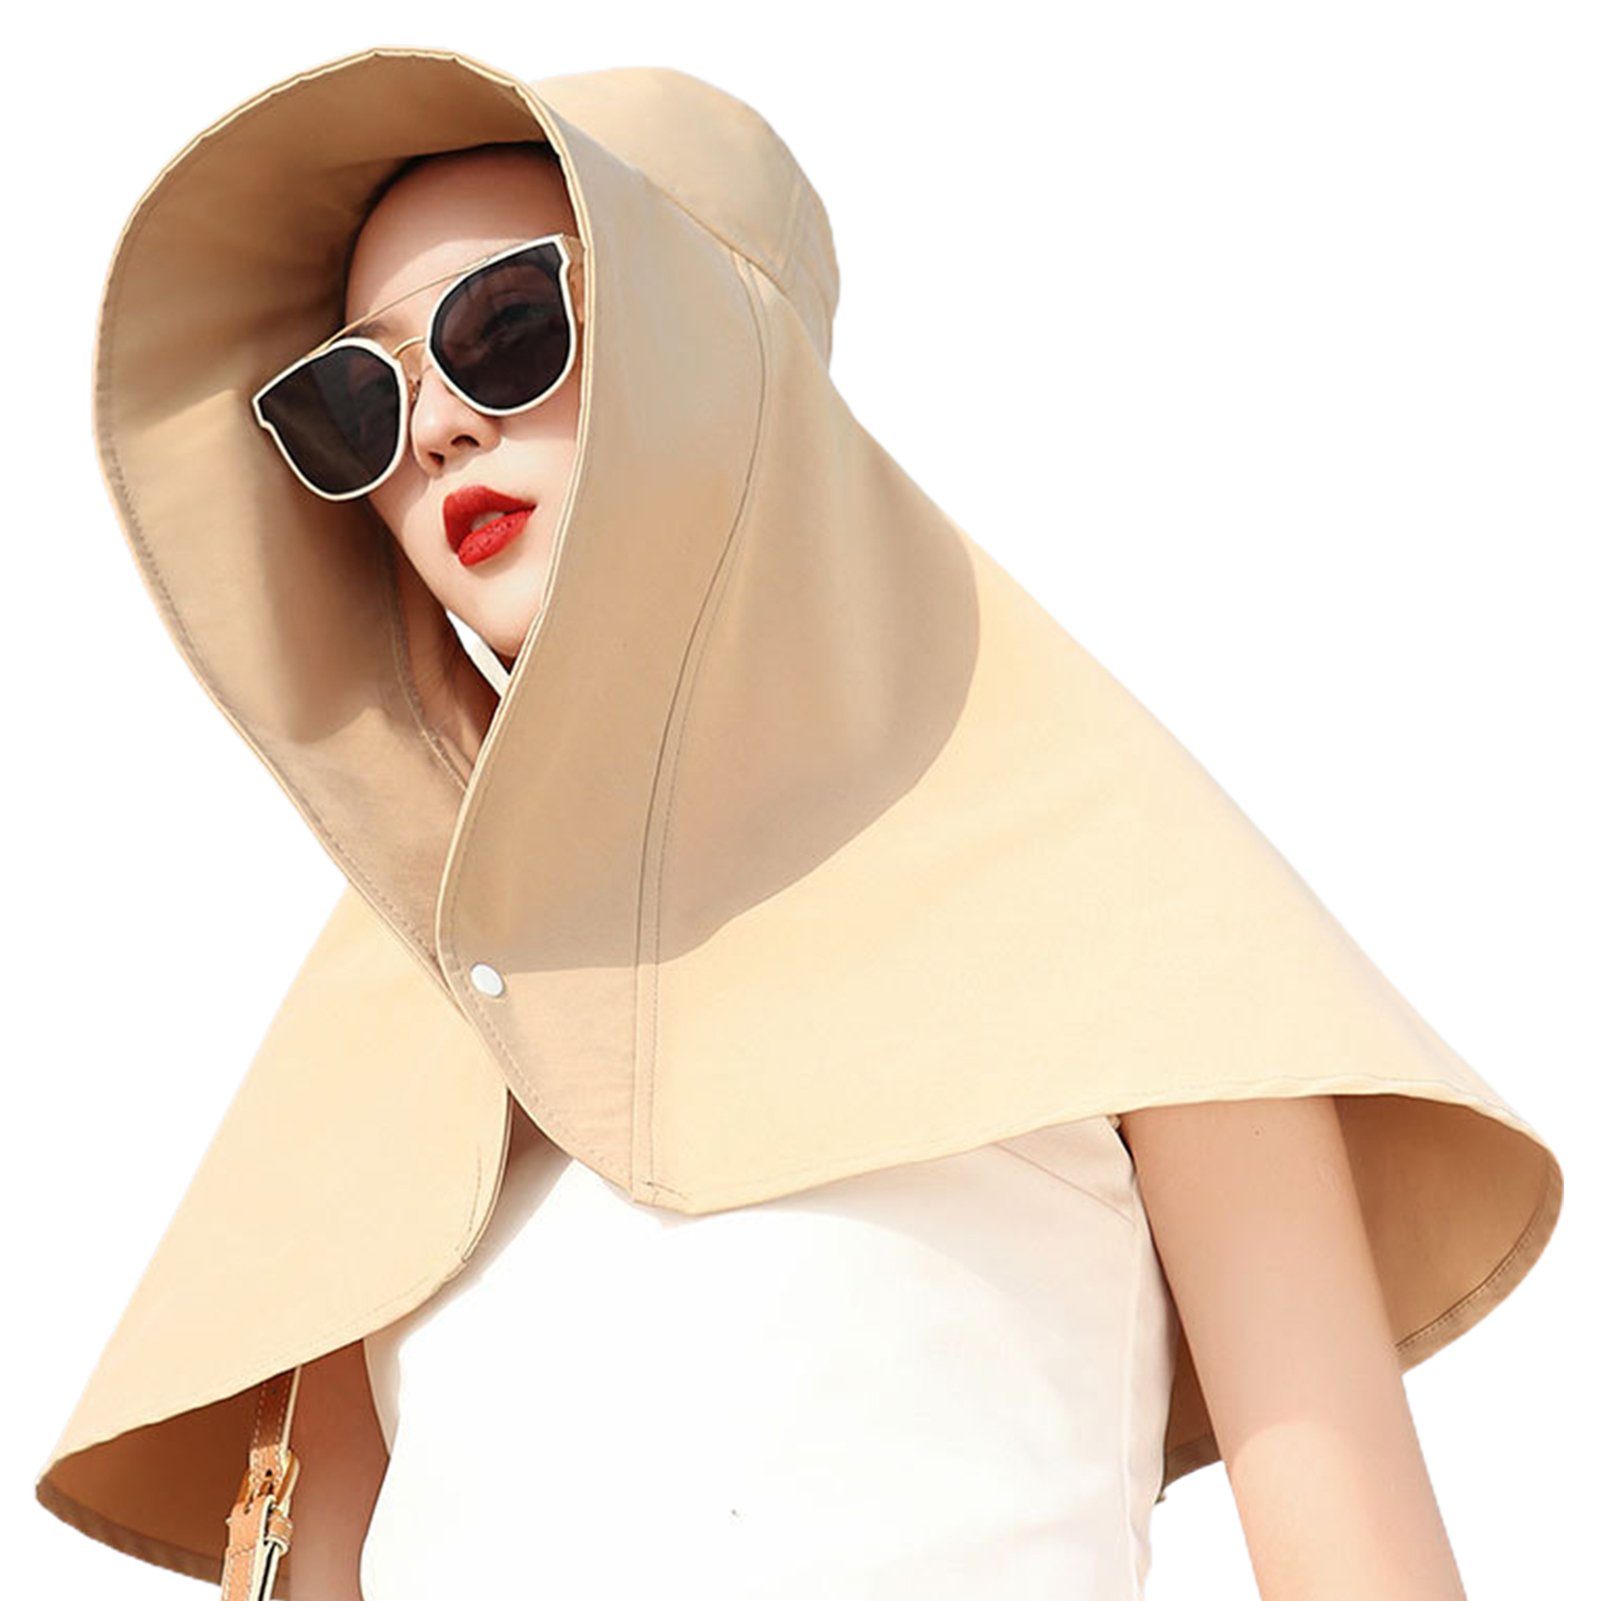 Mode Abdeckung grau Damen Gesicht Blusmart Sonnenhut Sommer Eimer Hut Sonnenschutz Schal